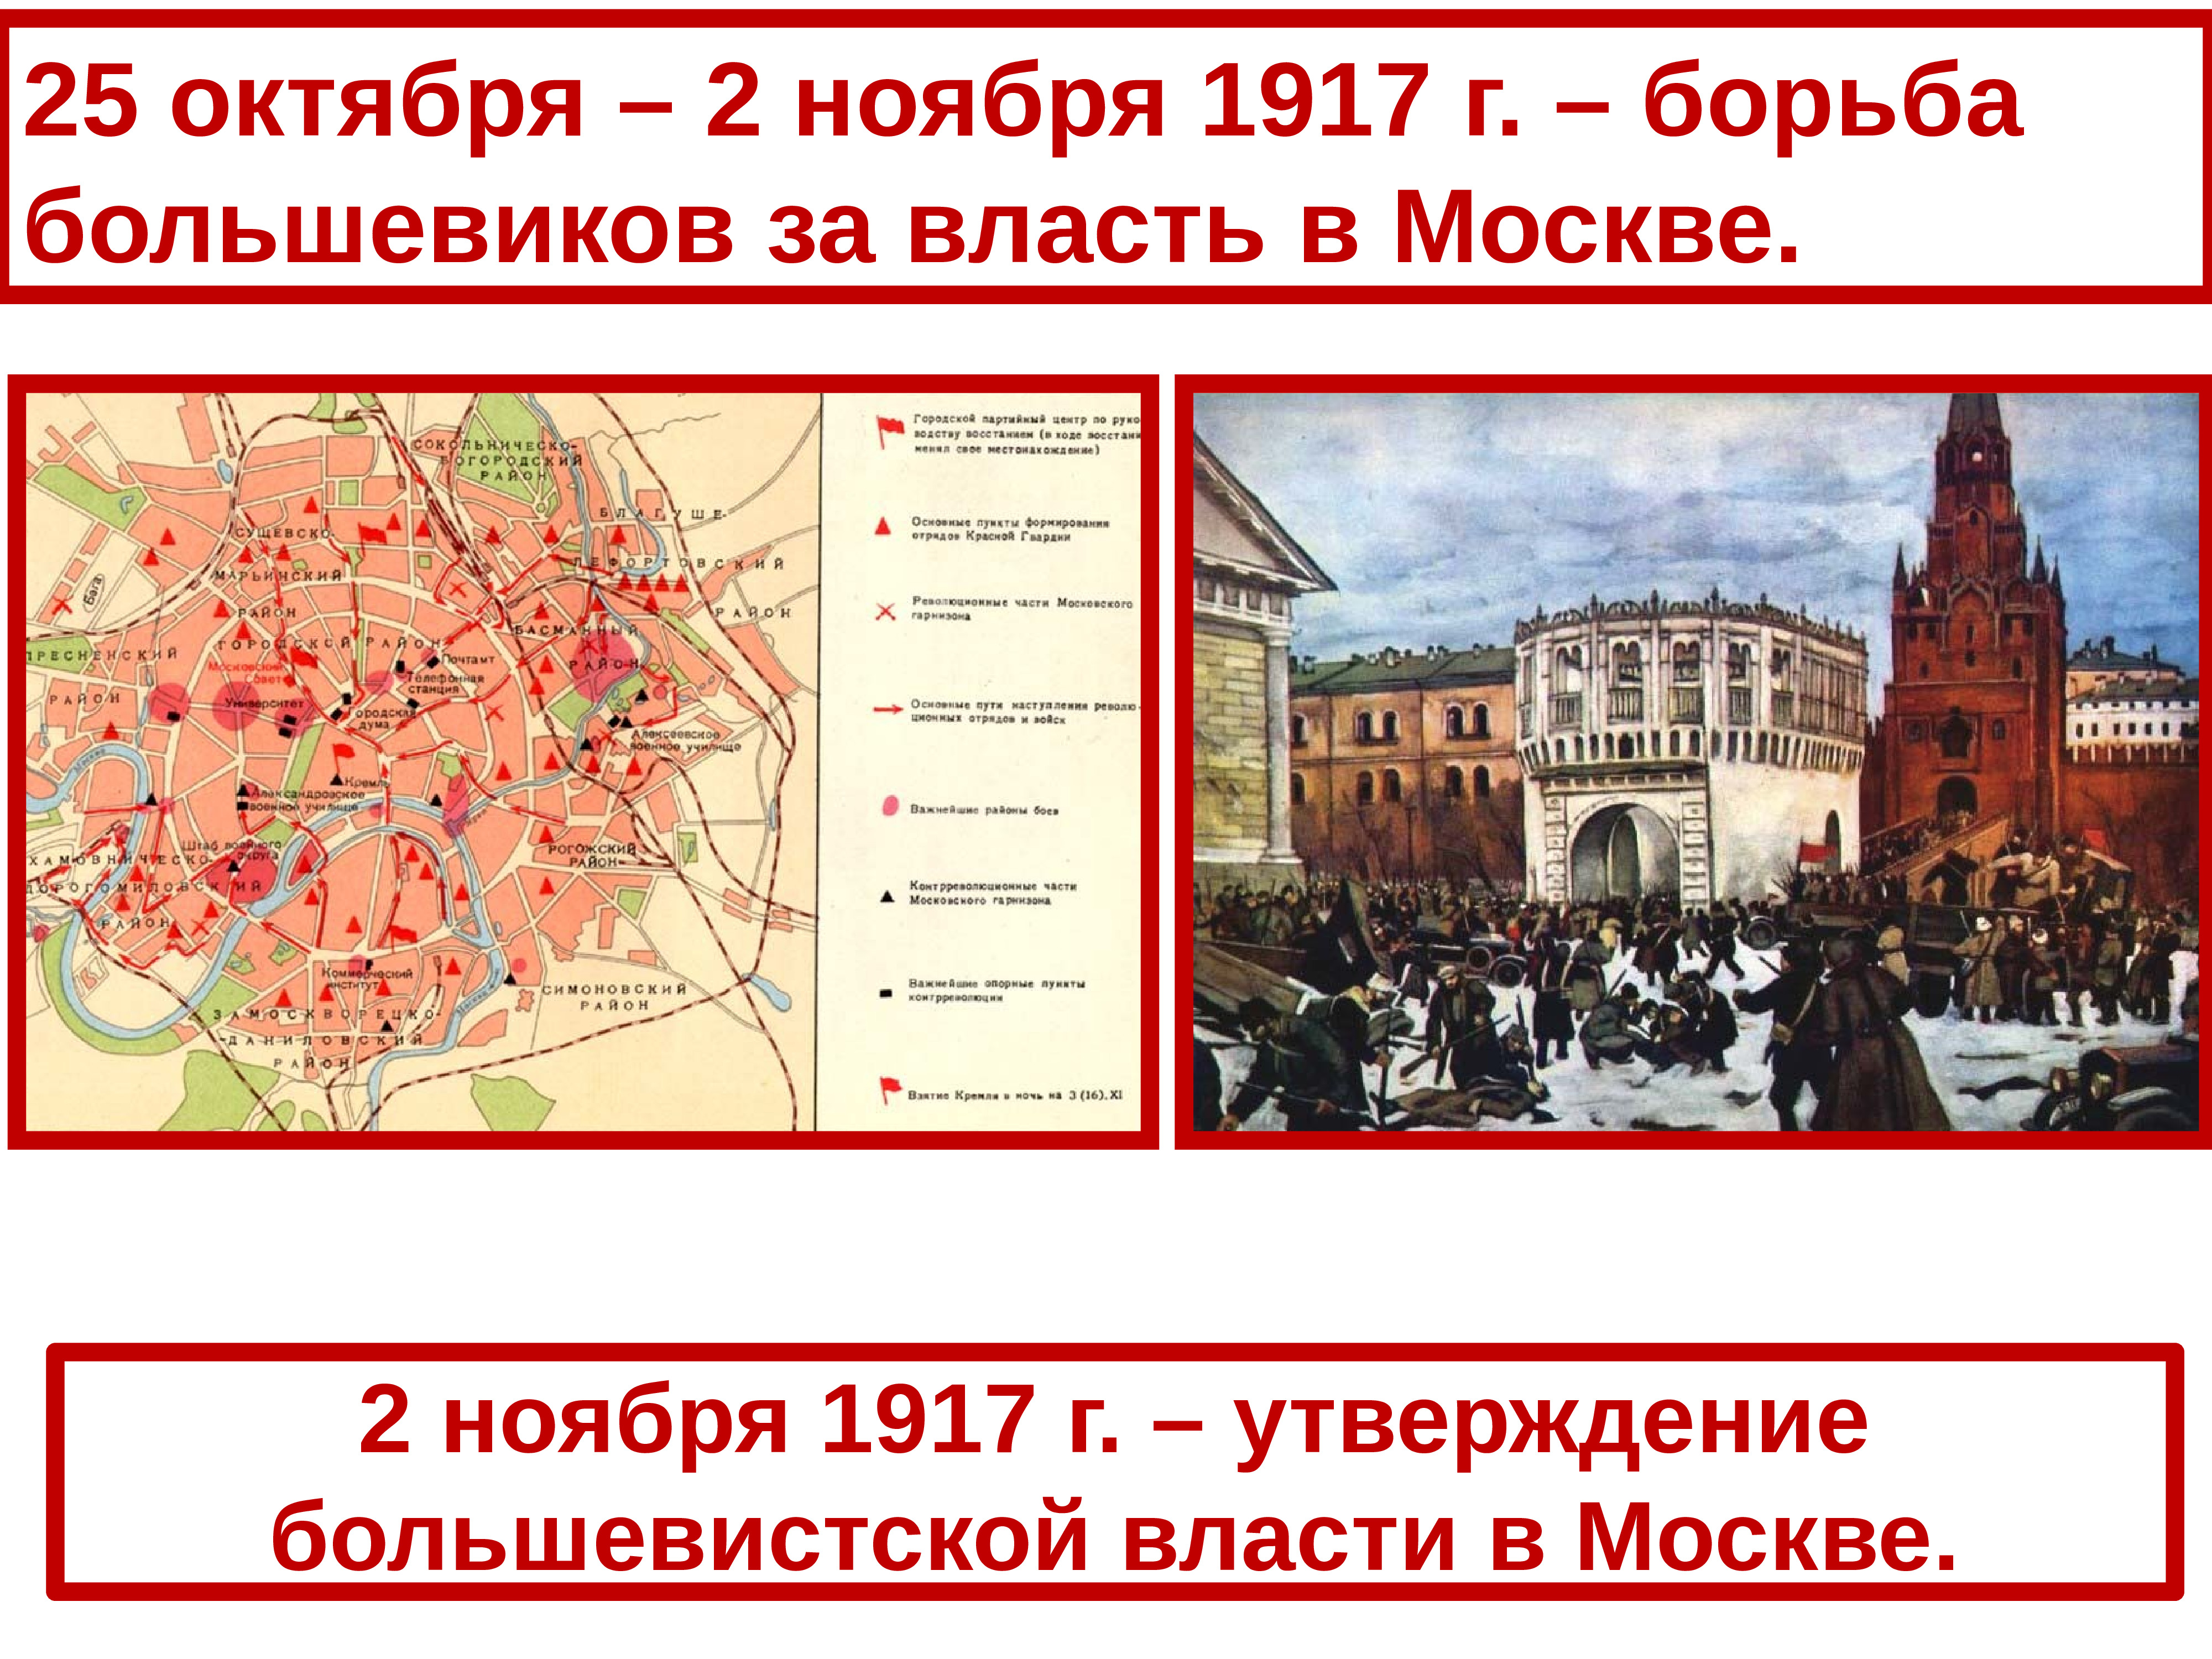 Октябрь 1917 презентация. Великая Российская революция октябрь 1917. Захват власти большевиками в октябре 1917 г. Большевики октябрь 1917.